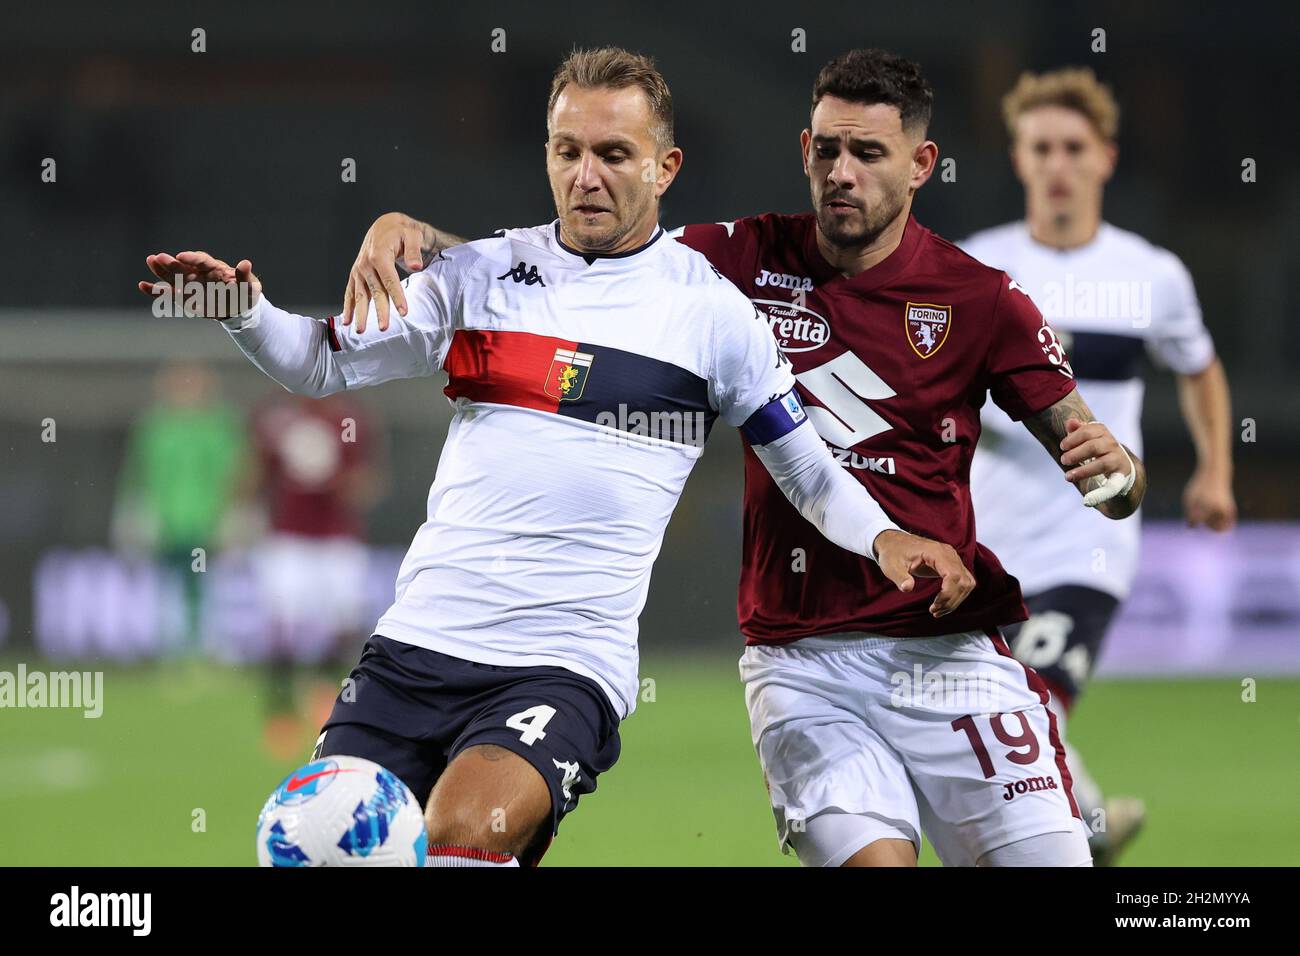 COP or DROP: Antonio Sanabria x Genoa CFC